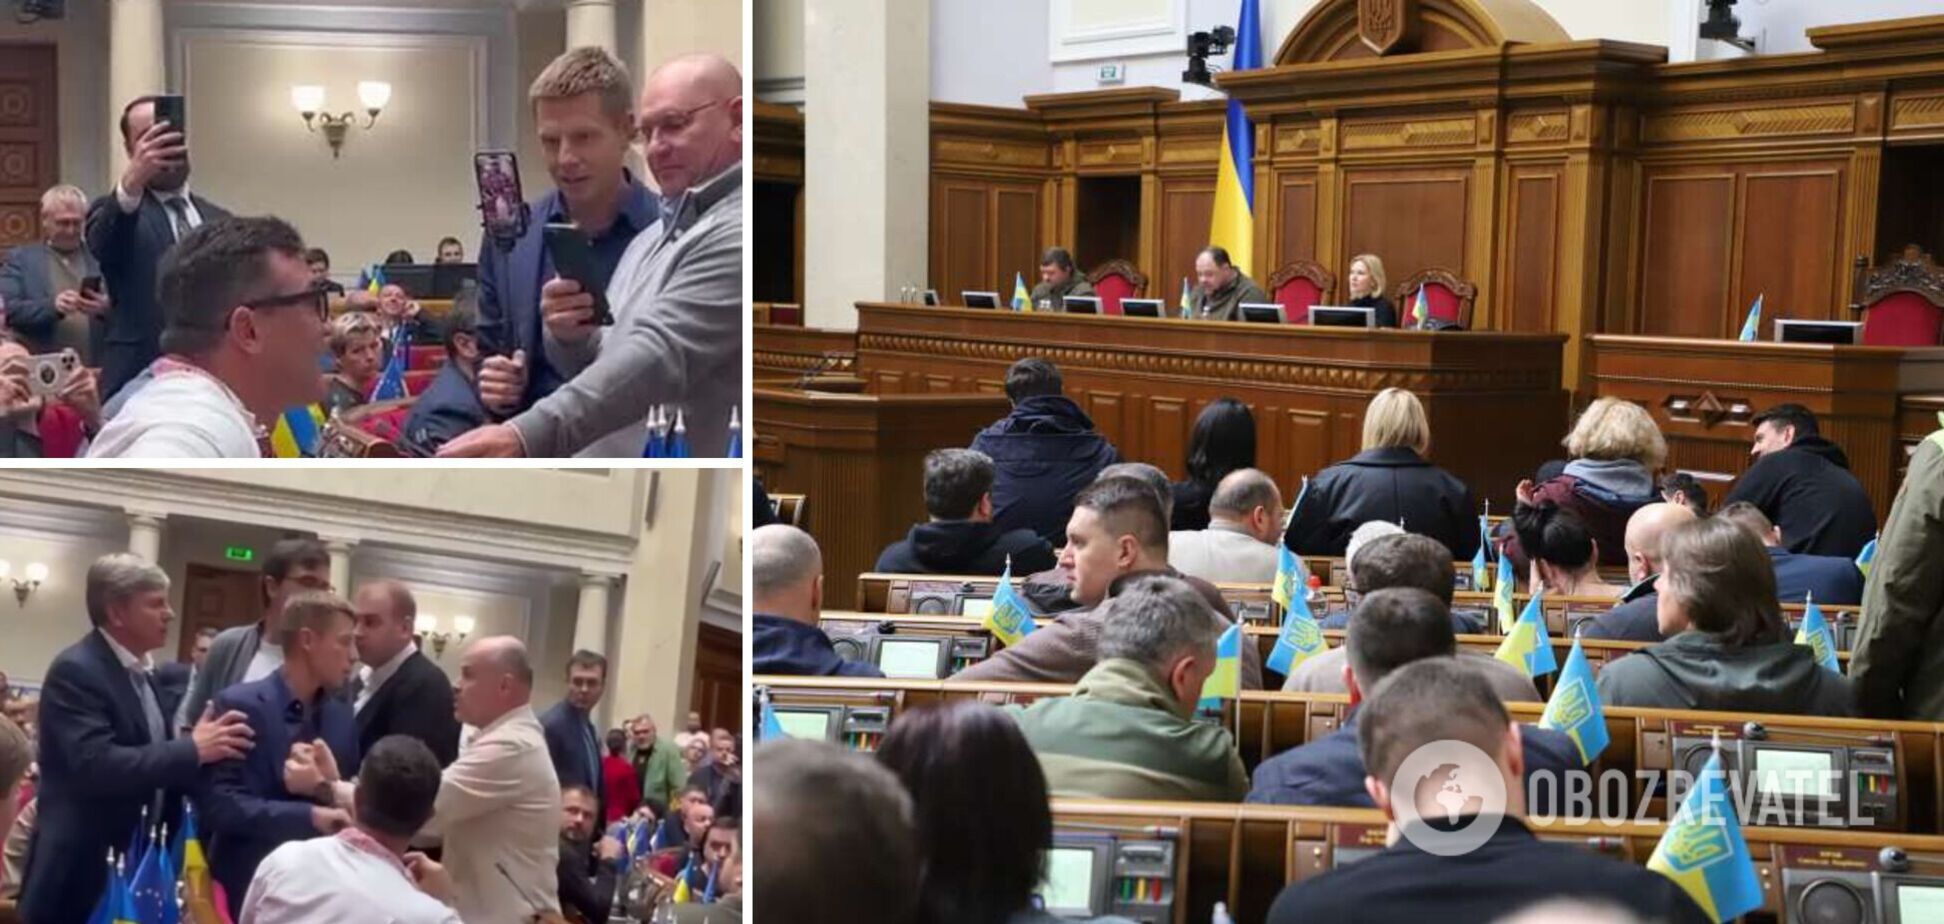 'Что с этим делать?' Украинцев возмутило поведение нардепов в Раде, разгорелись дискуссии. Видео